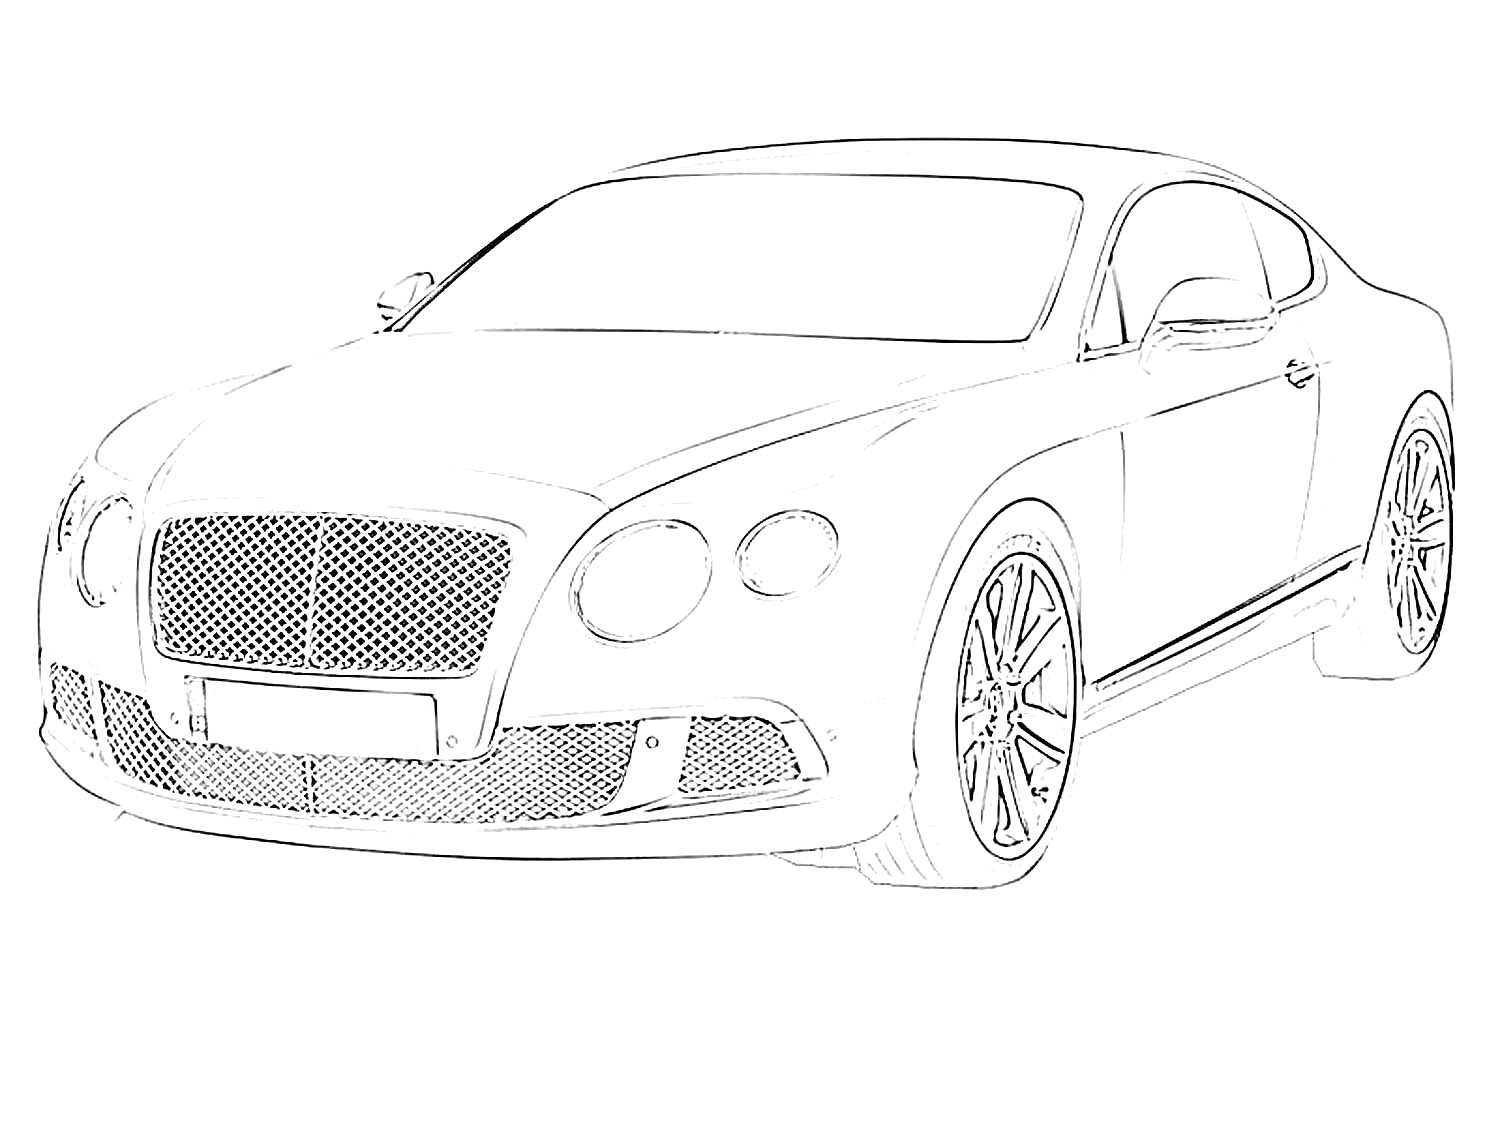 Bentley Continental GT, спортивное купе с габаритным передним бампером, массивной решеткой радиатора и круглыми фарами